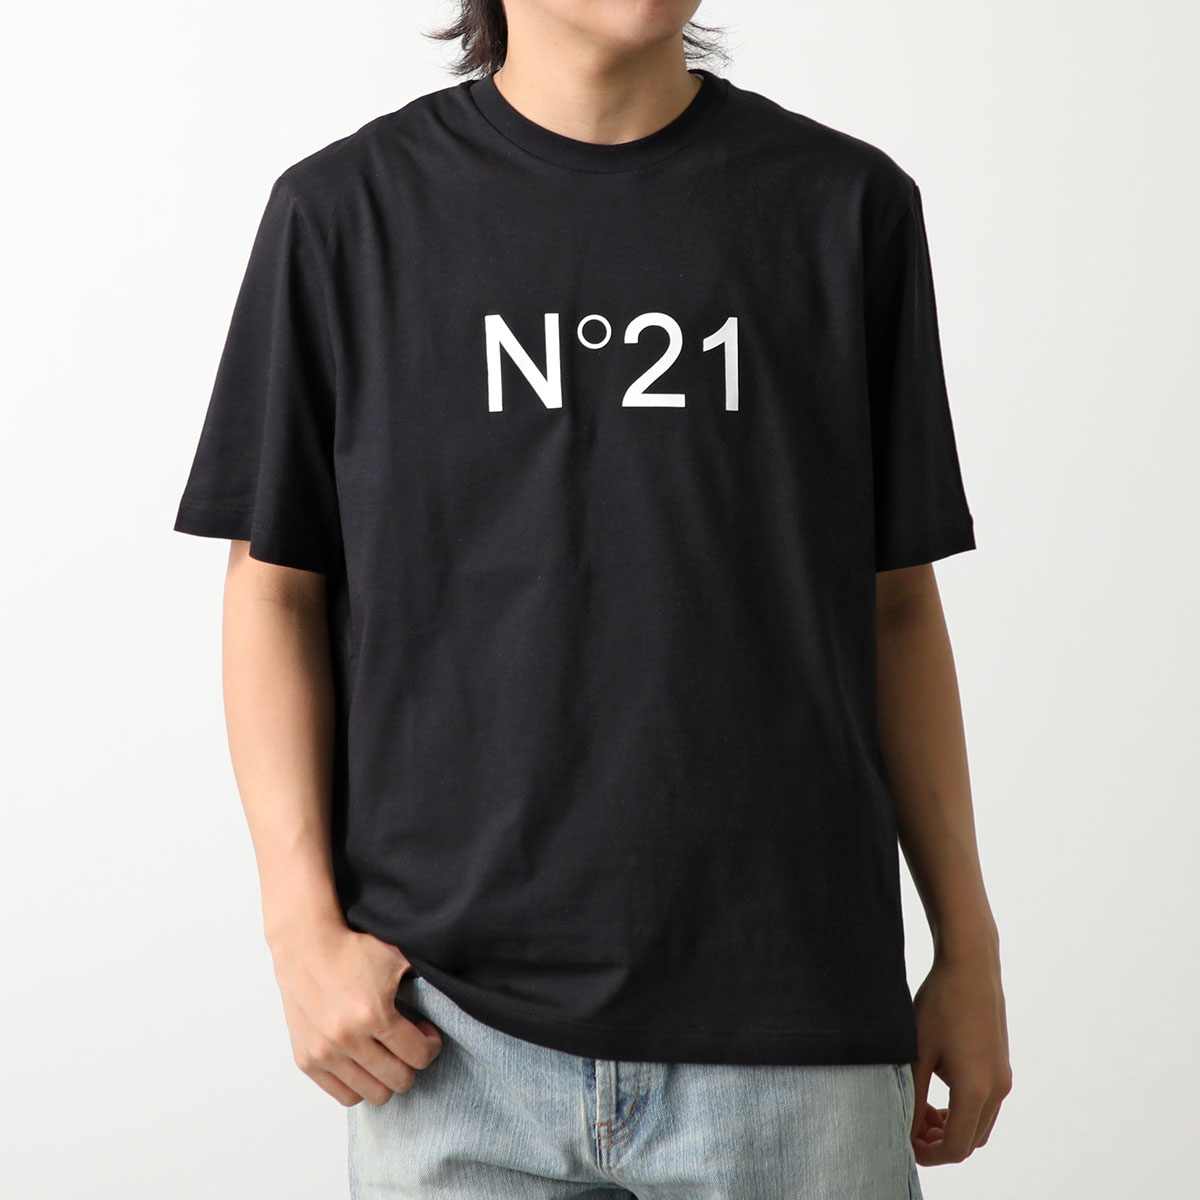 N°21 ヌメロヴェントゥーノ Tシャツ F131 4157 メンズ クルーネック 半袖 コットン ...